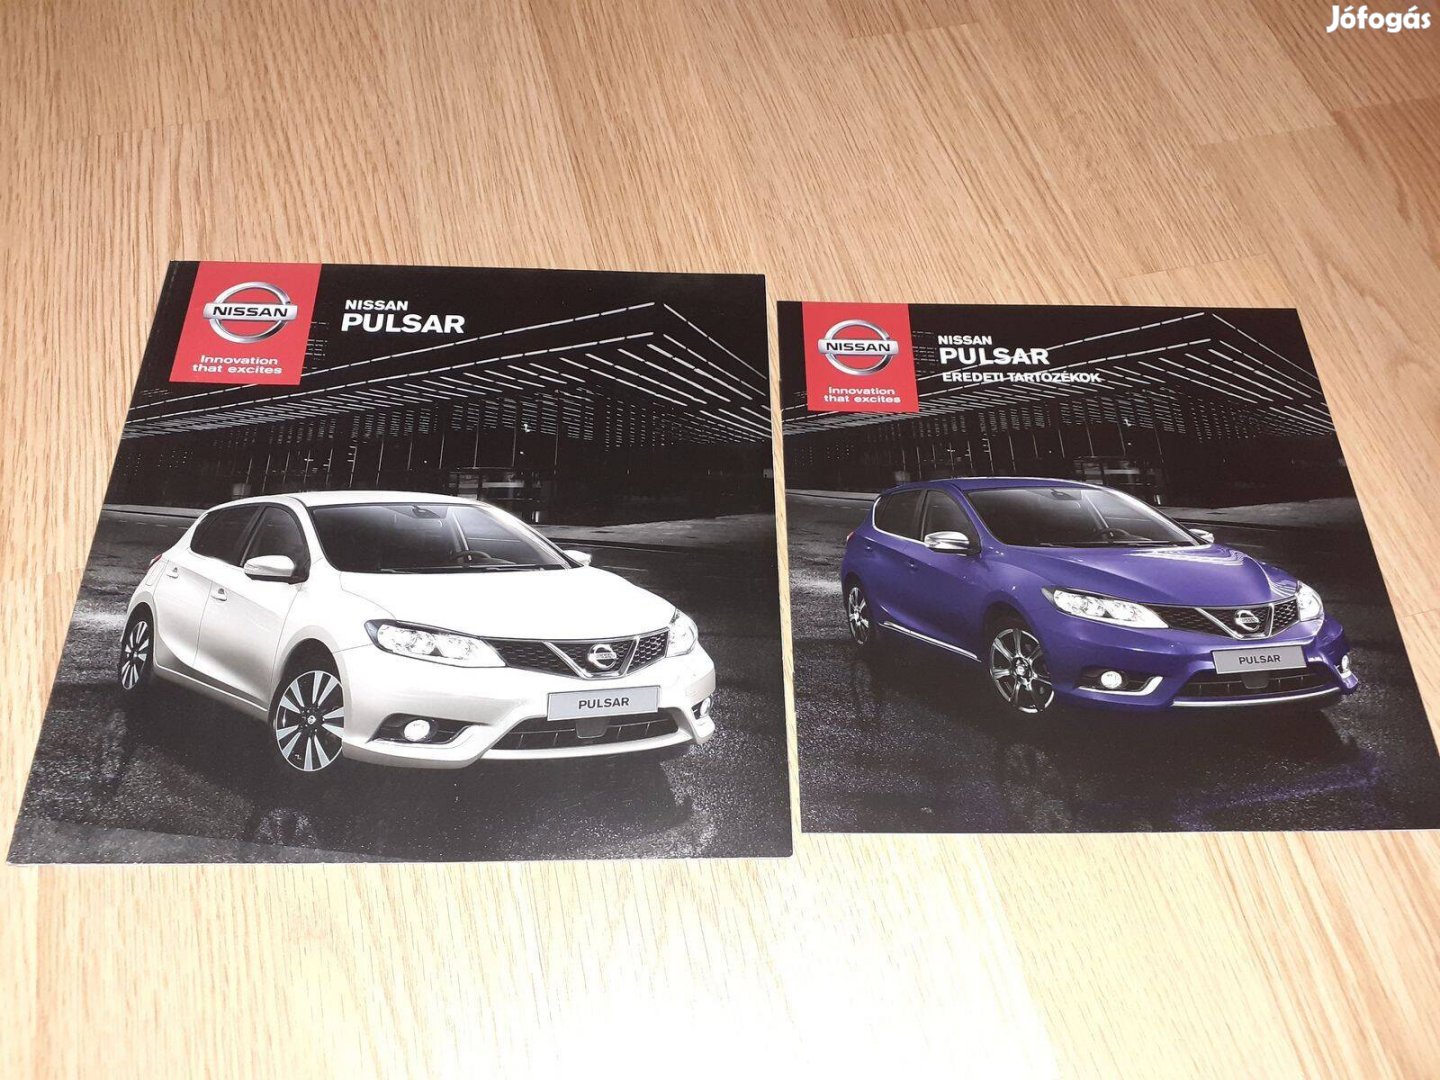 Nissan Pulsar prospektus + tartozékok - 2014, magyar nyelvű